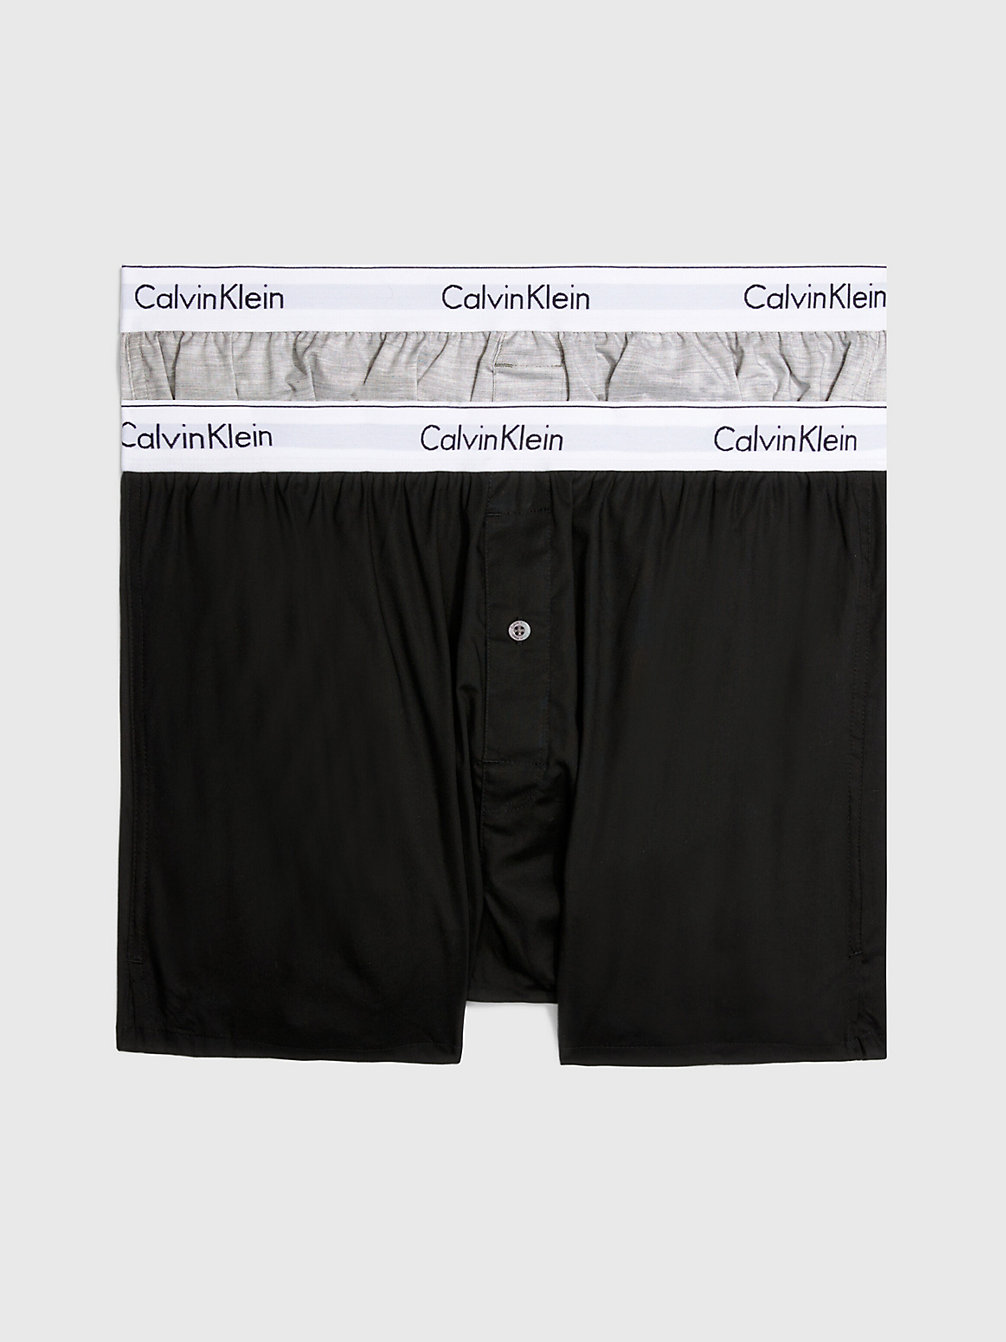 BLACK / GREY HEATHER 2 Pack Slim Fit Boxers - Modern Cotton undefined men Calvin Klein